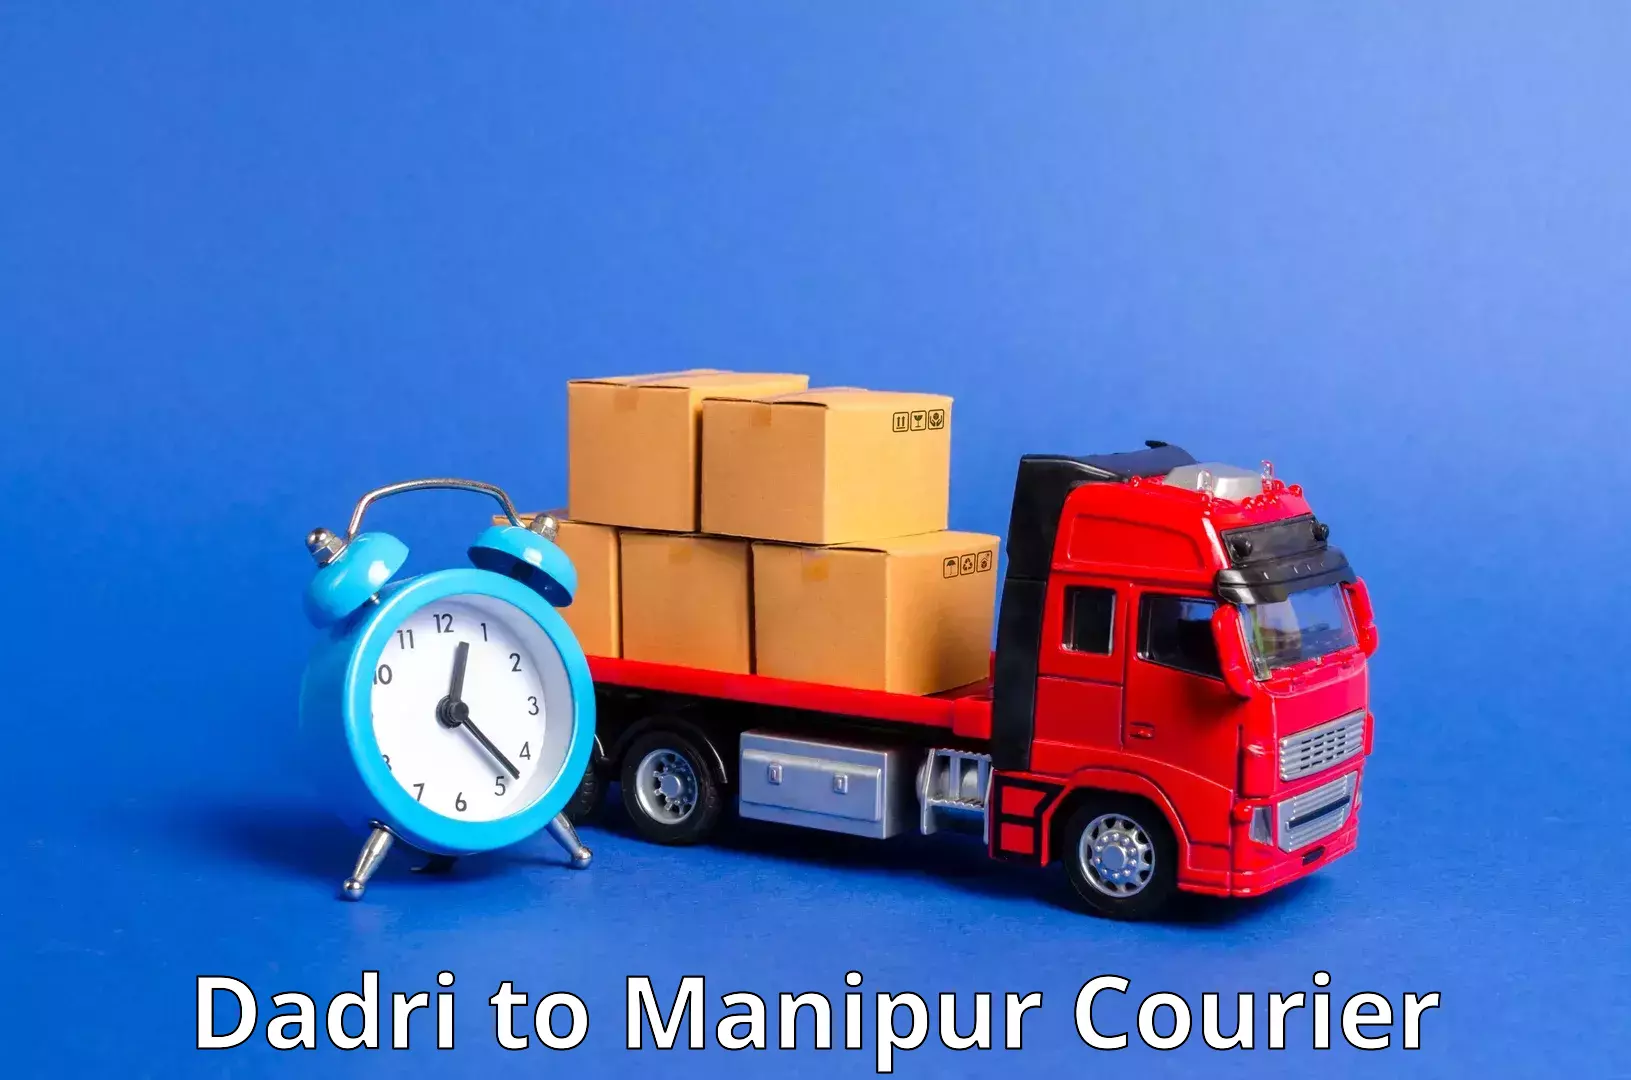 Customer-oriented courier services Dadri to Churachandpur